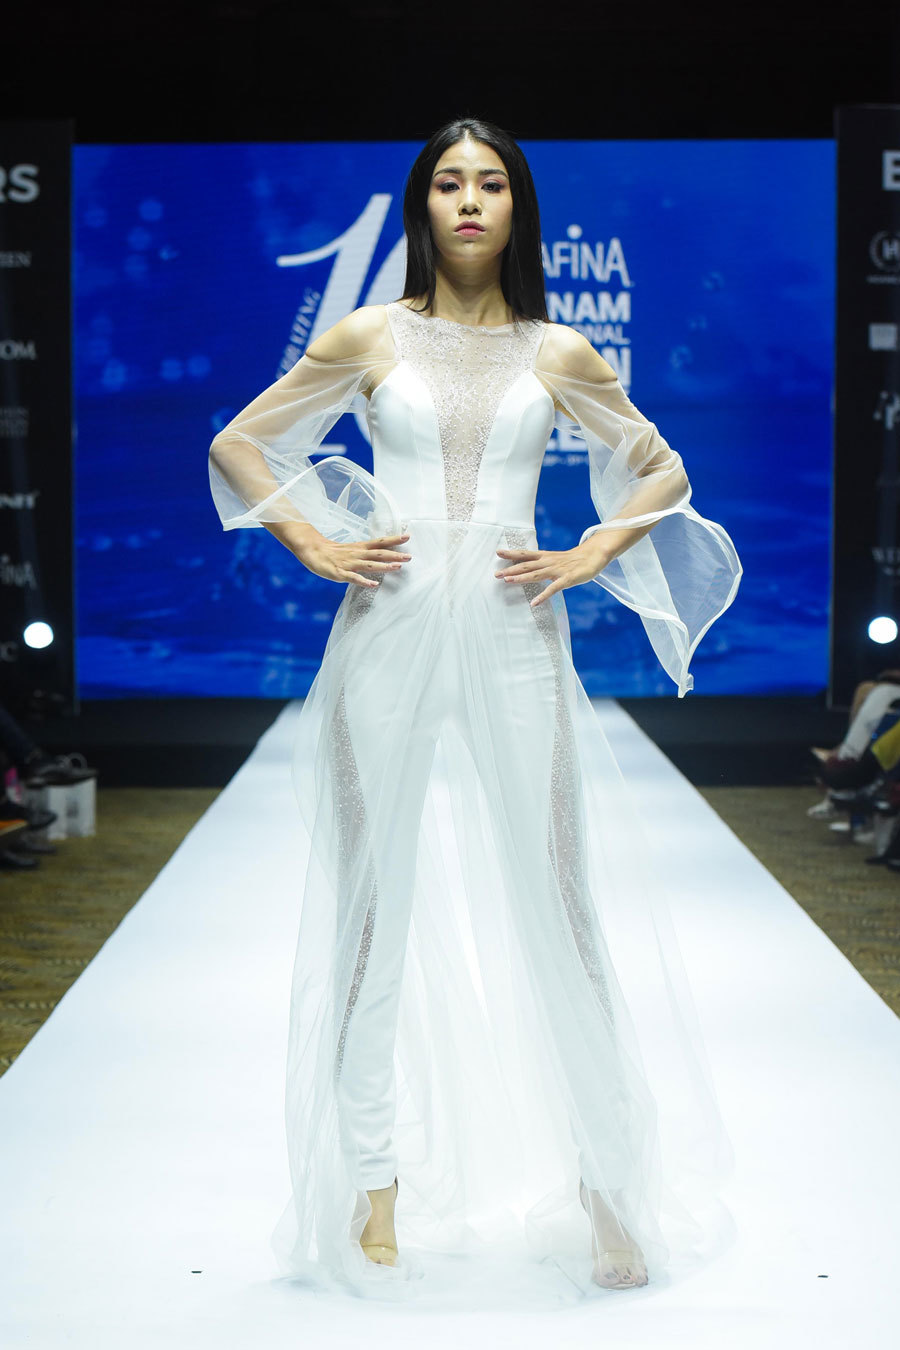 NTK Hoàng Hải mở màn tuần lễ thời trang quốc tế Thu Đông 2019